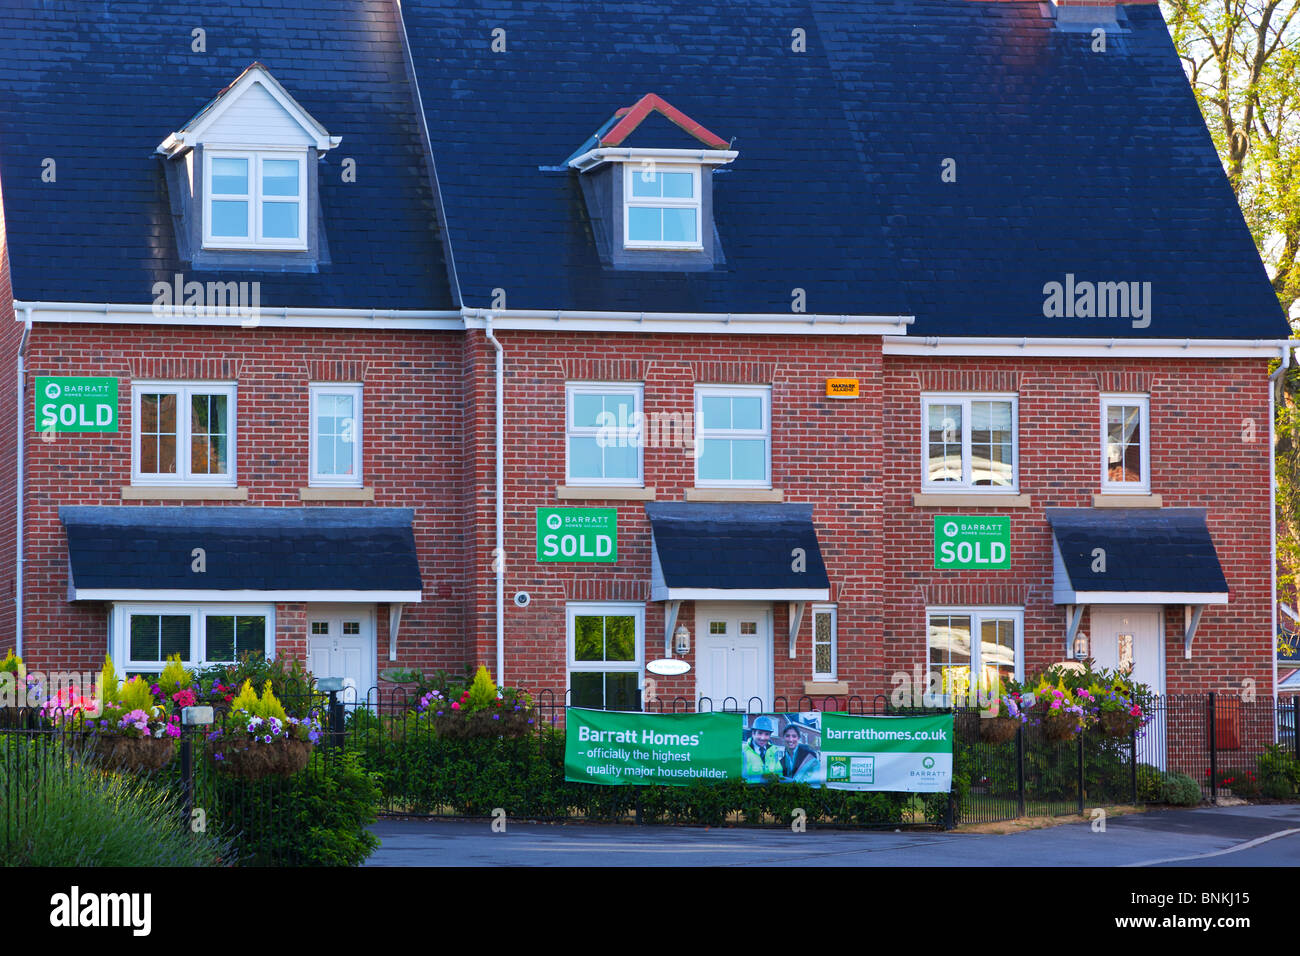 Rangée de maisons sur une nouvelle Barratt de logements dans le Hampshire, Angleterre du Sud-Est, chacune avec un signe vendus sur le mur. Banque D'Images